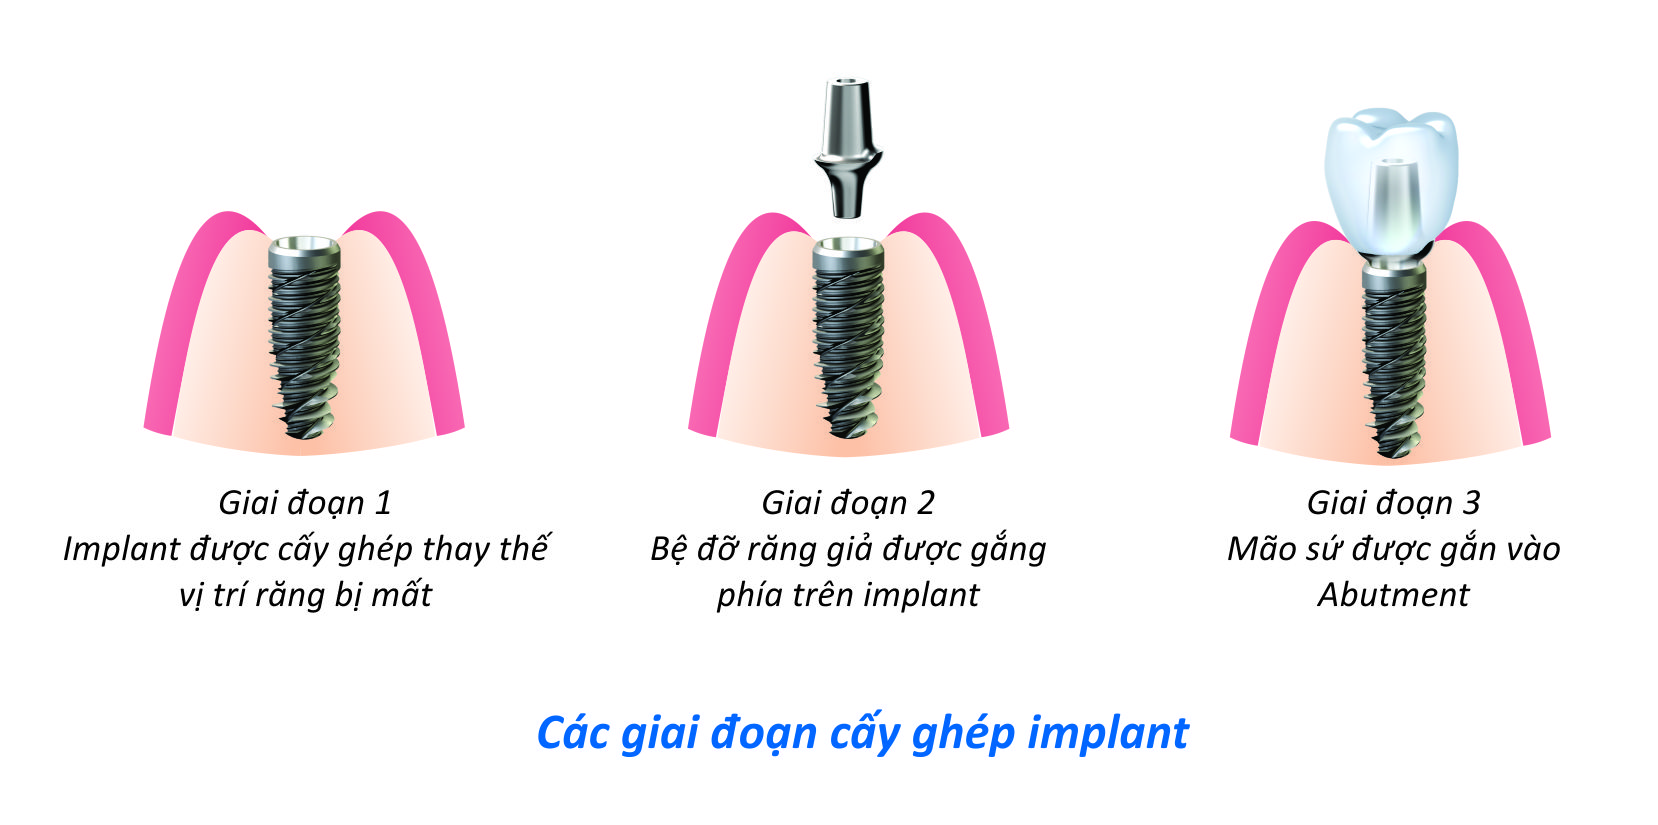 Cấy ghép Implant được thực hiện như thế nào ?